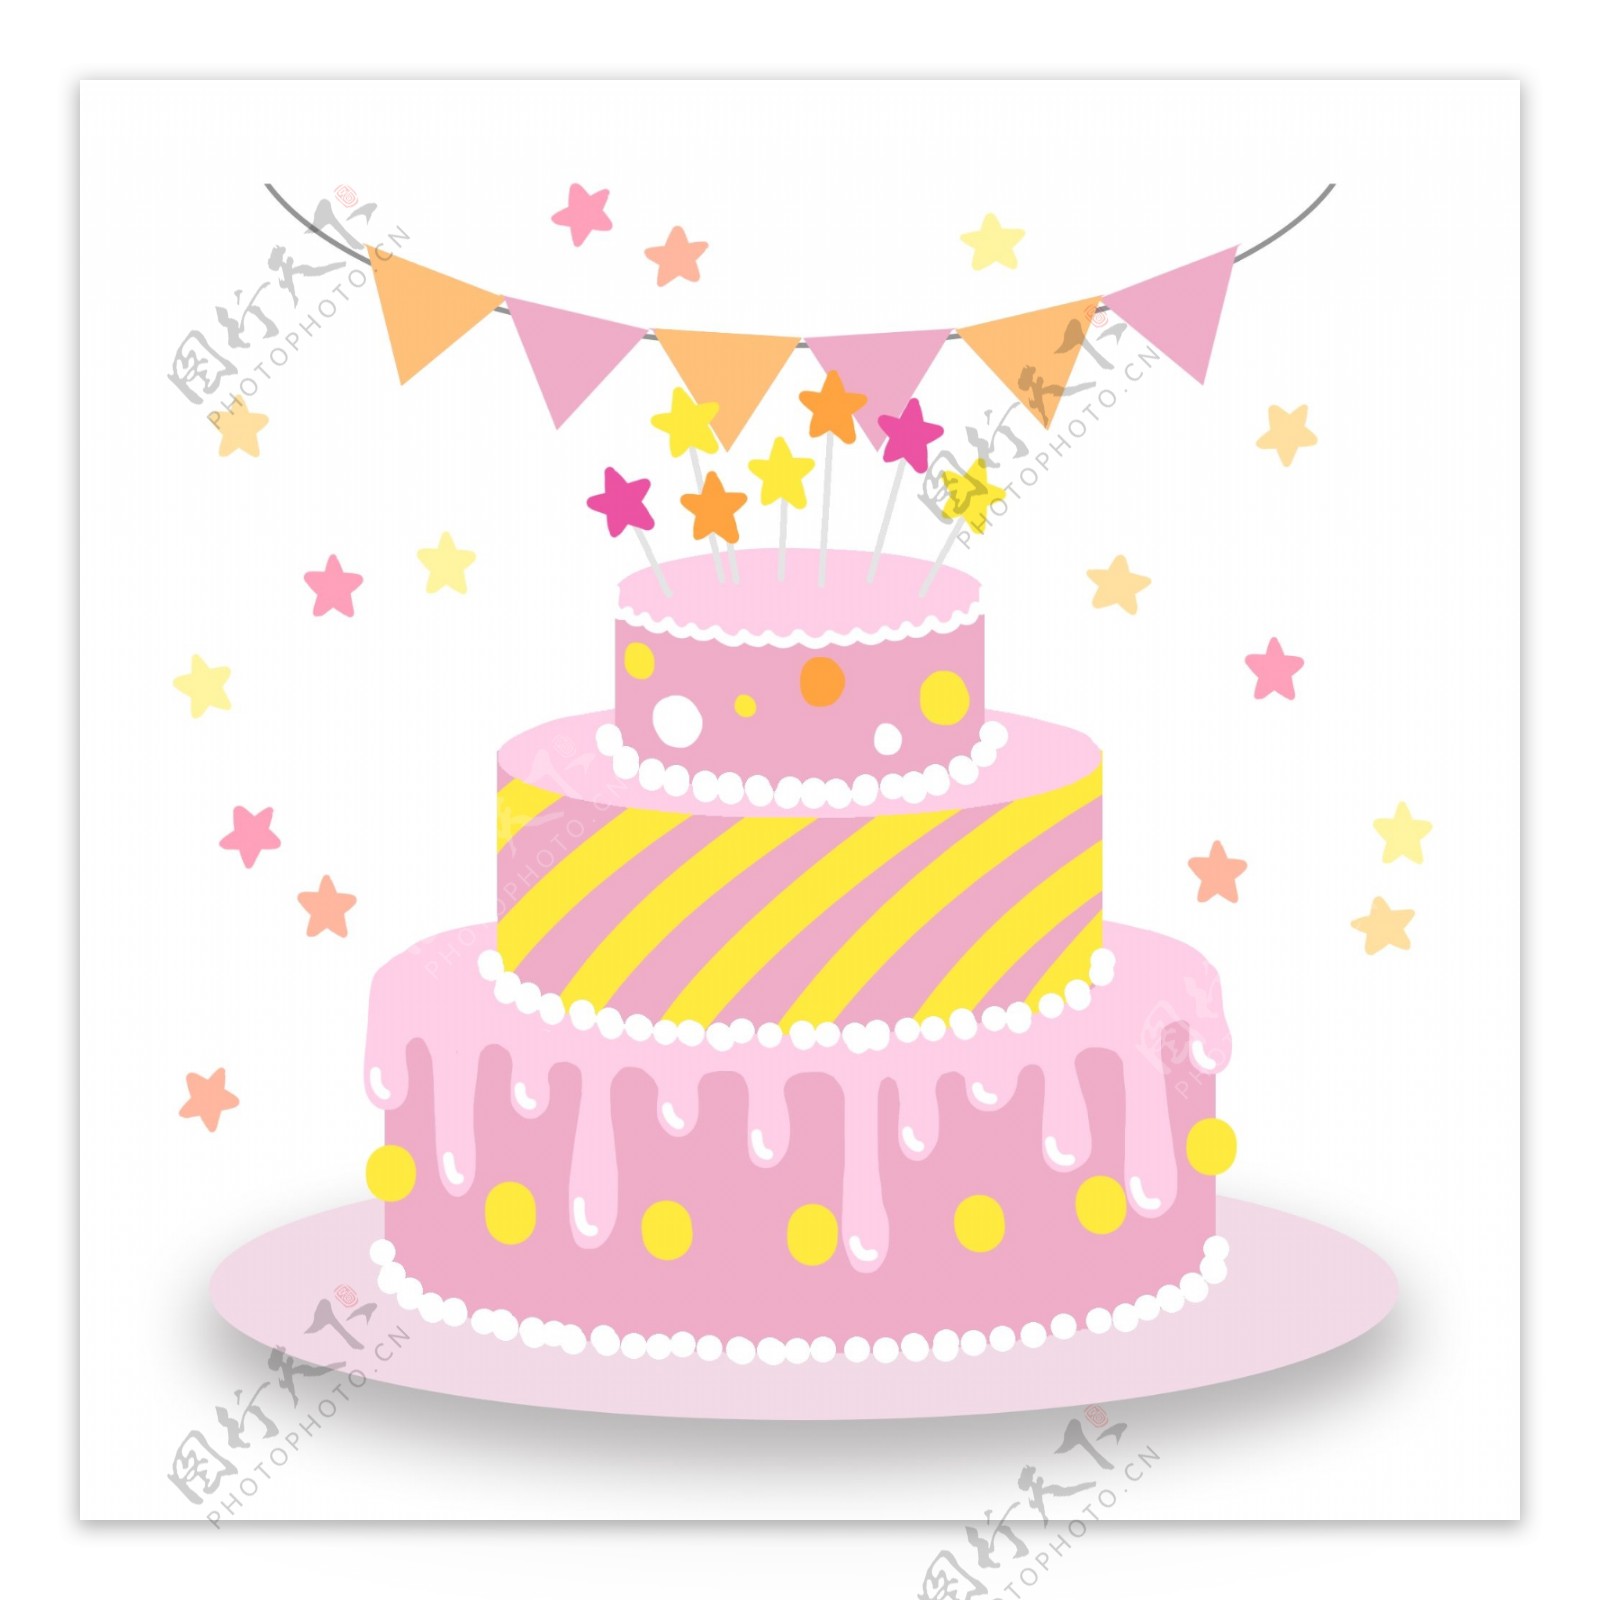 可爱粉色生日星星蛋糕图案